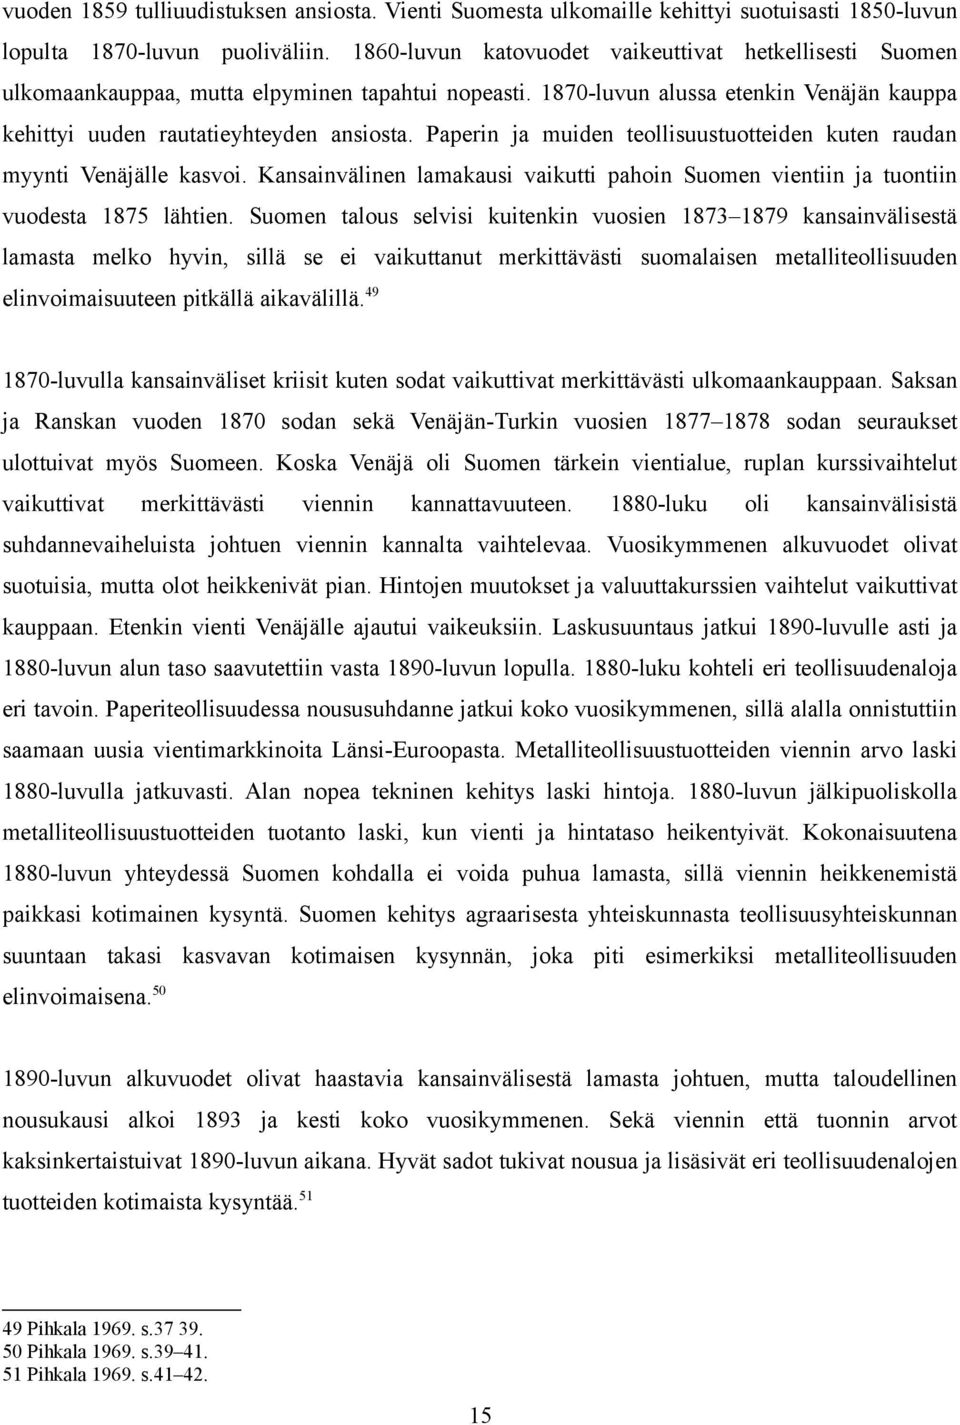 Paperin ja muiden teollisuustuotteiden kuten raudan myynti Venäjälle kasvoi. Kansainvälinen lamakausi vaikutti pahoin Suomen vientiin ja tuontiin vuodesta 1875 lähtien.